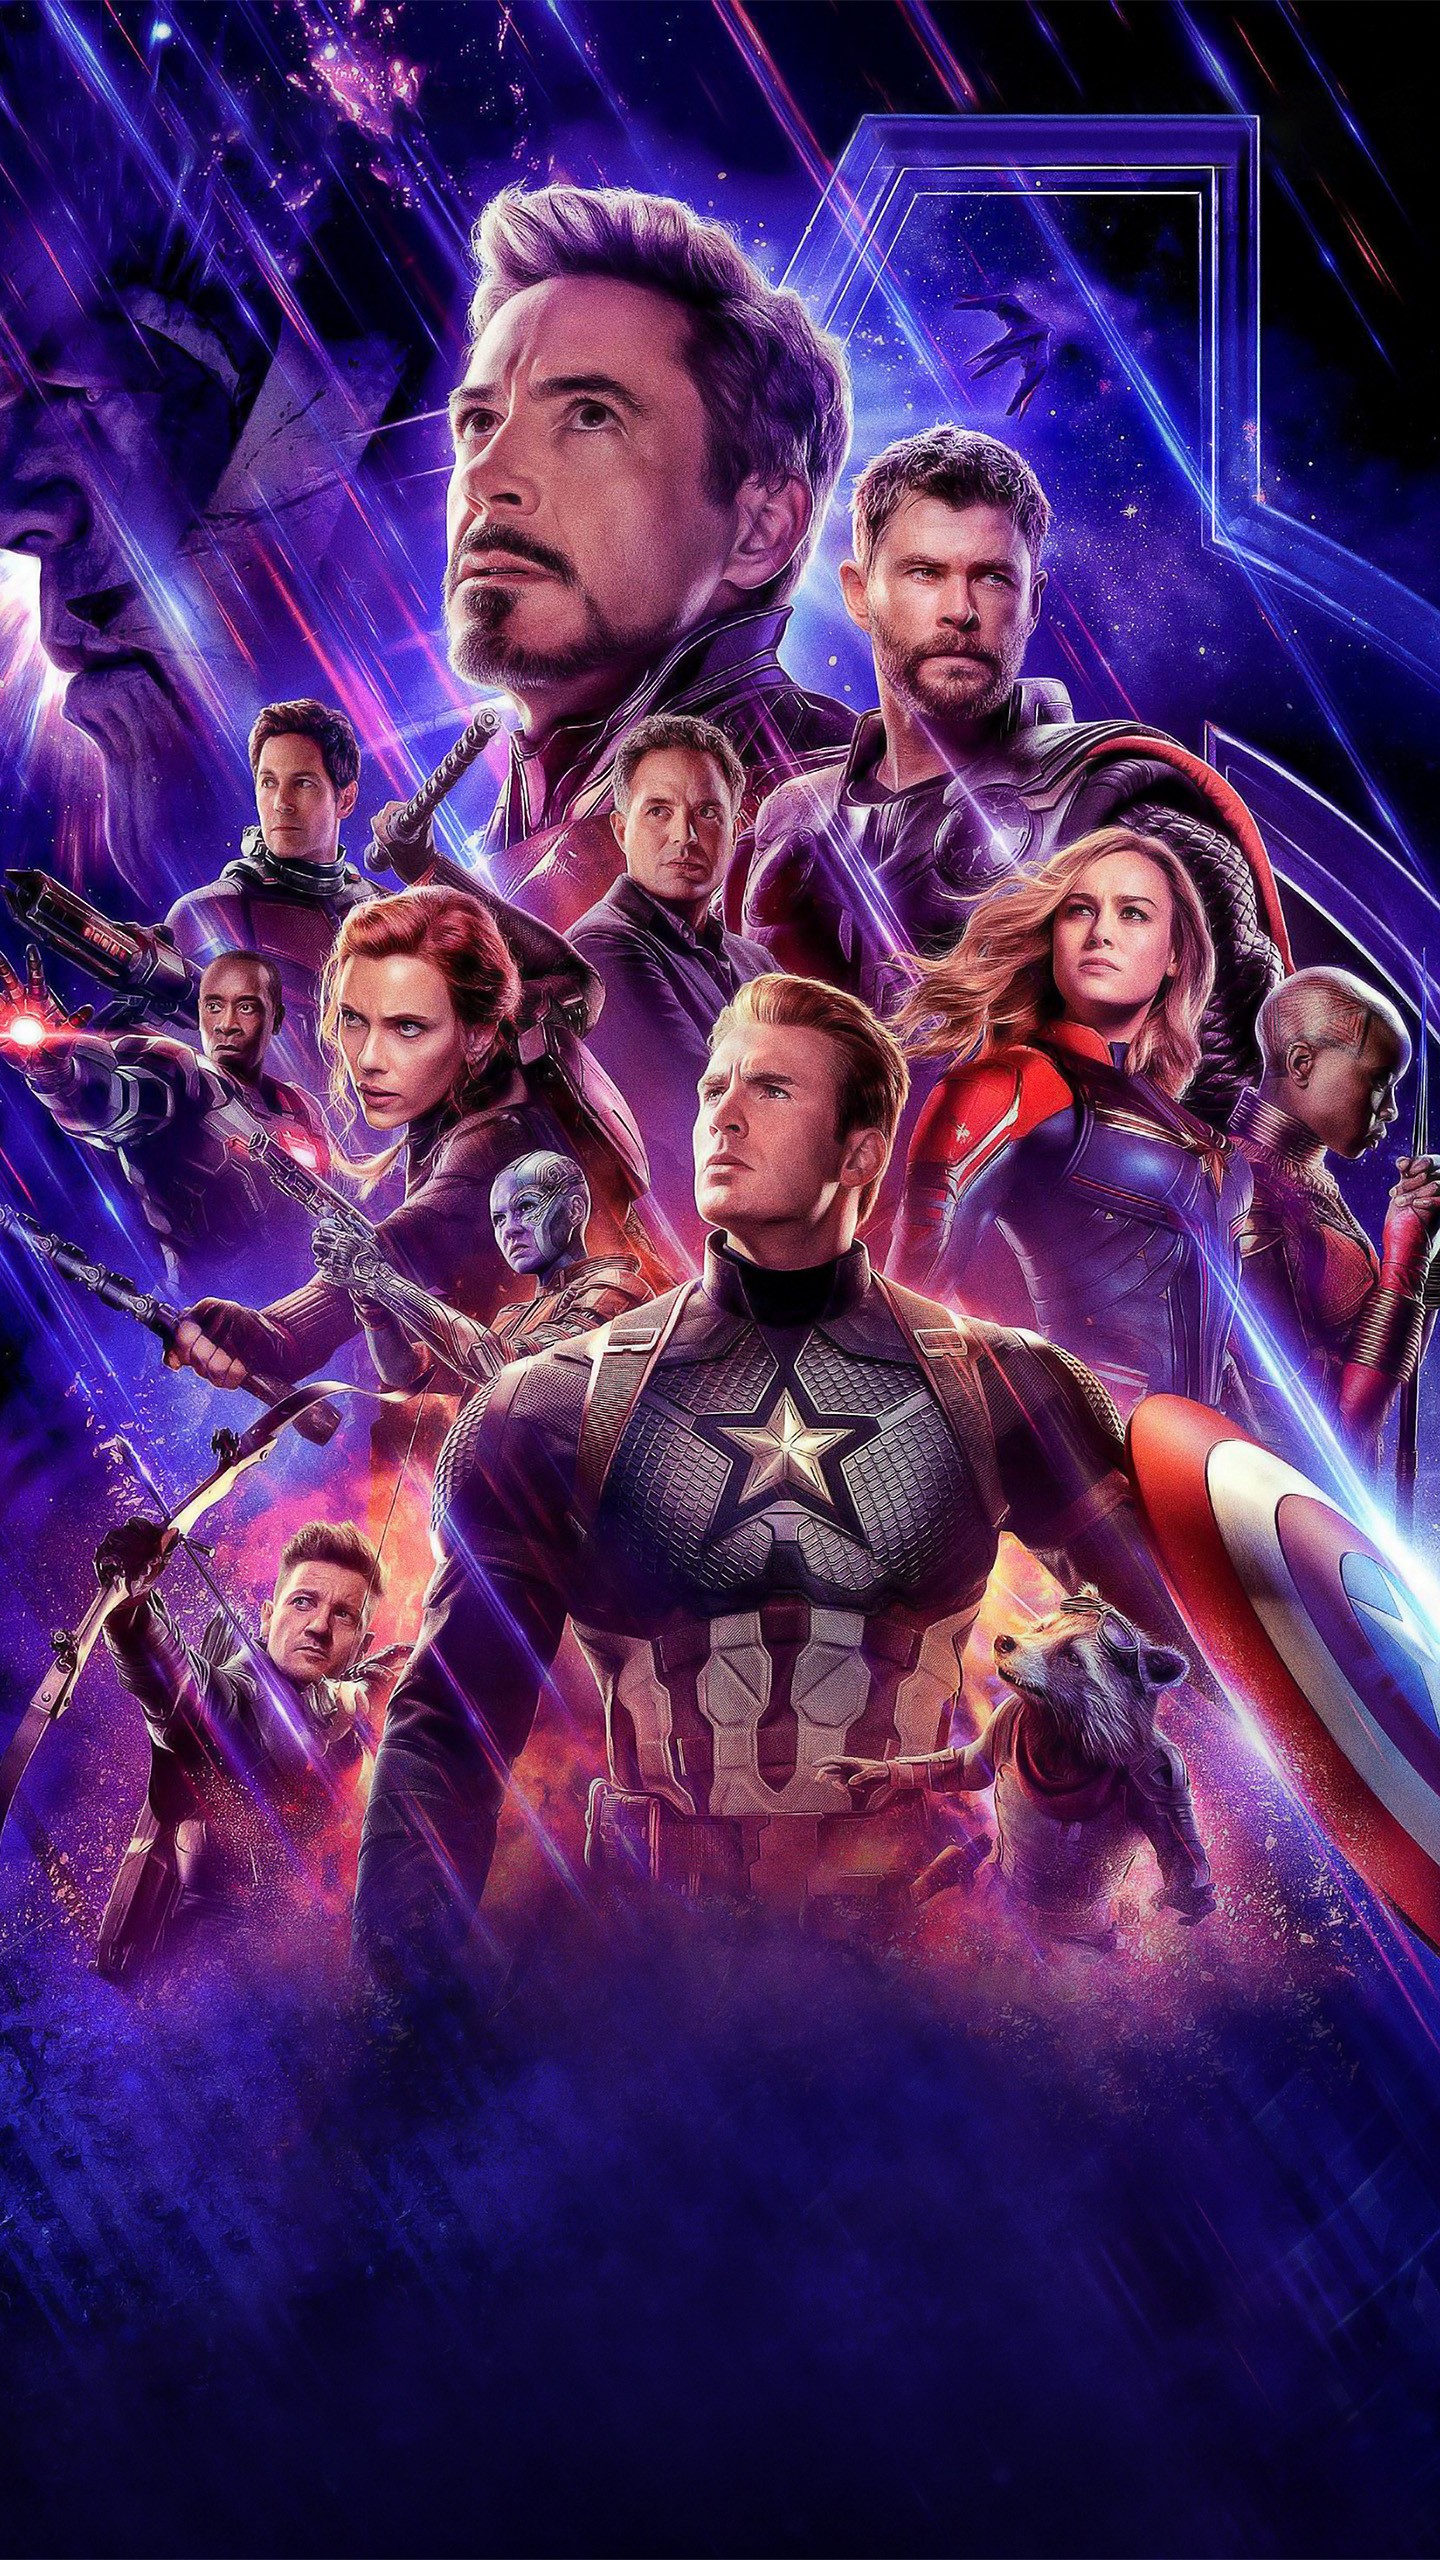 Avengers Endgame Official Poster 4K Wallpaper